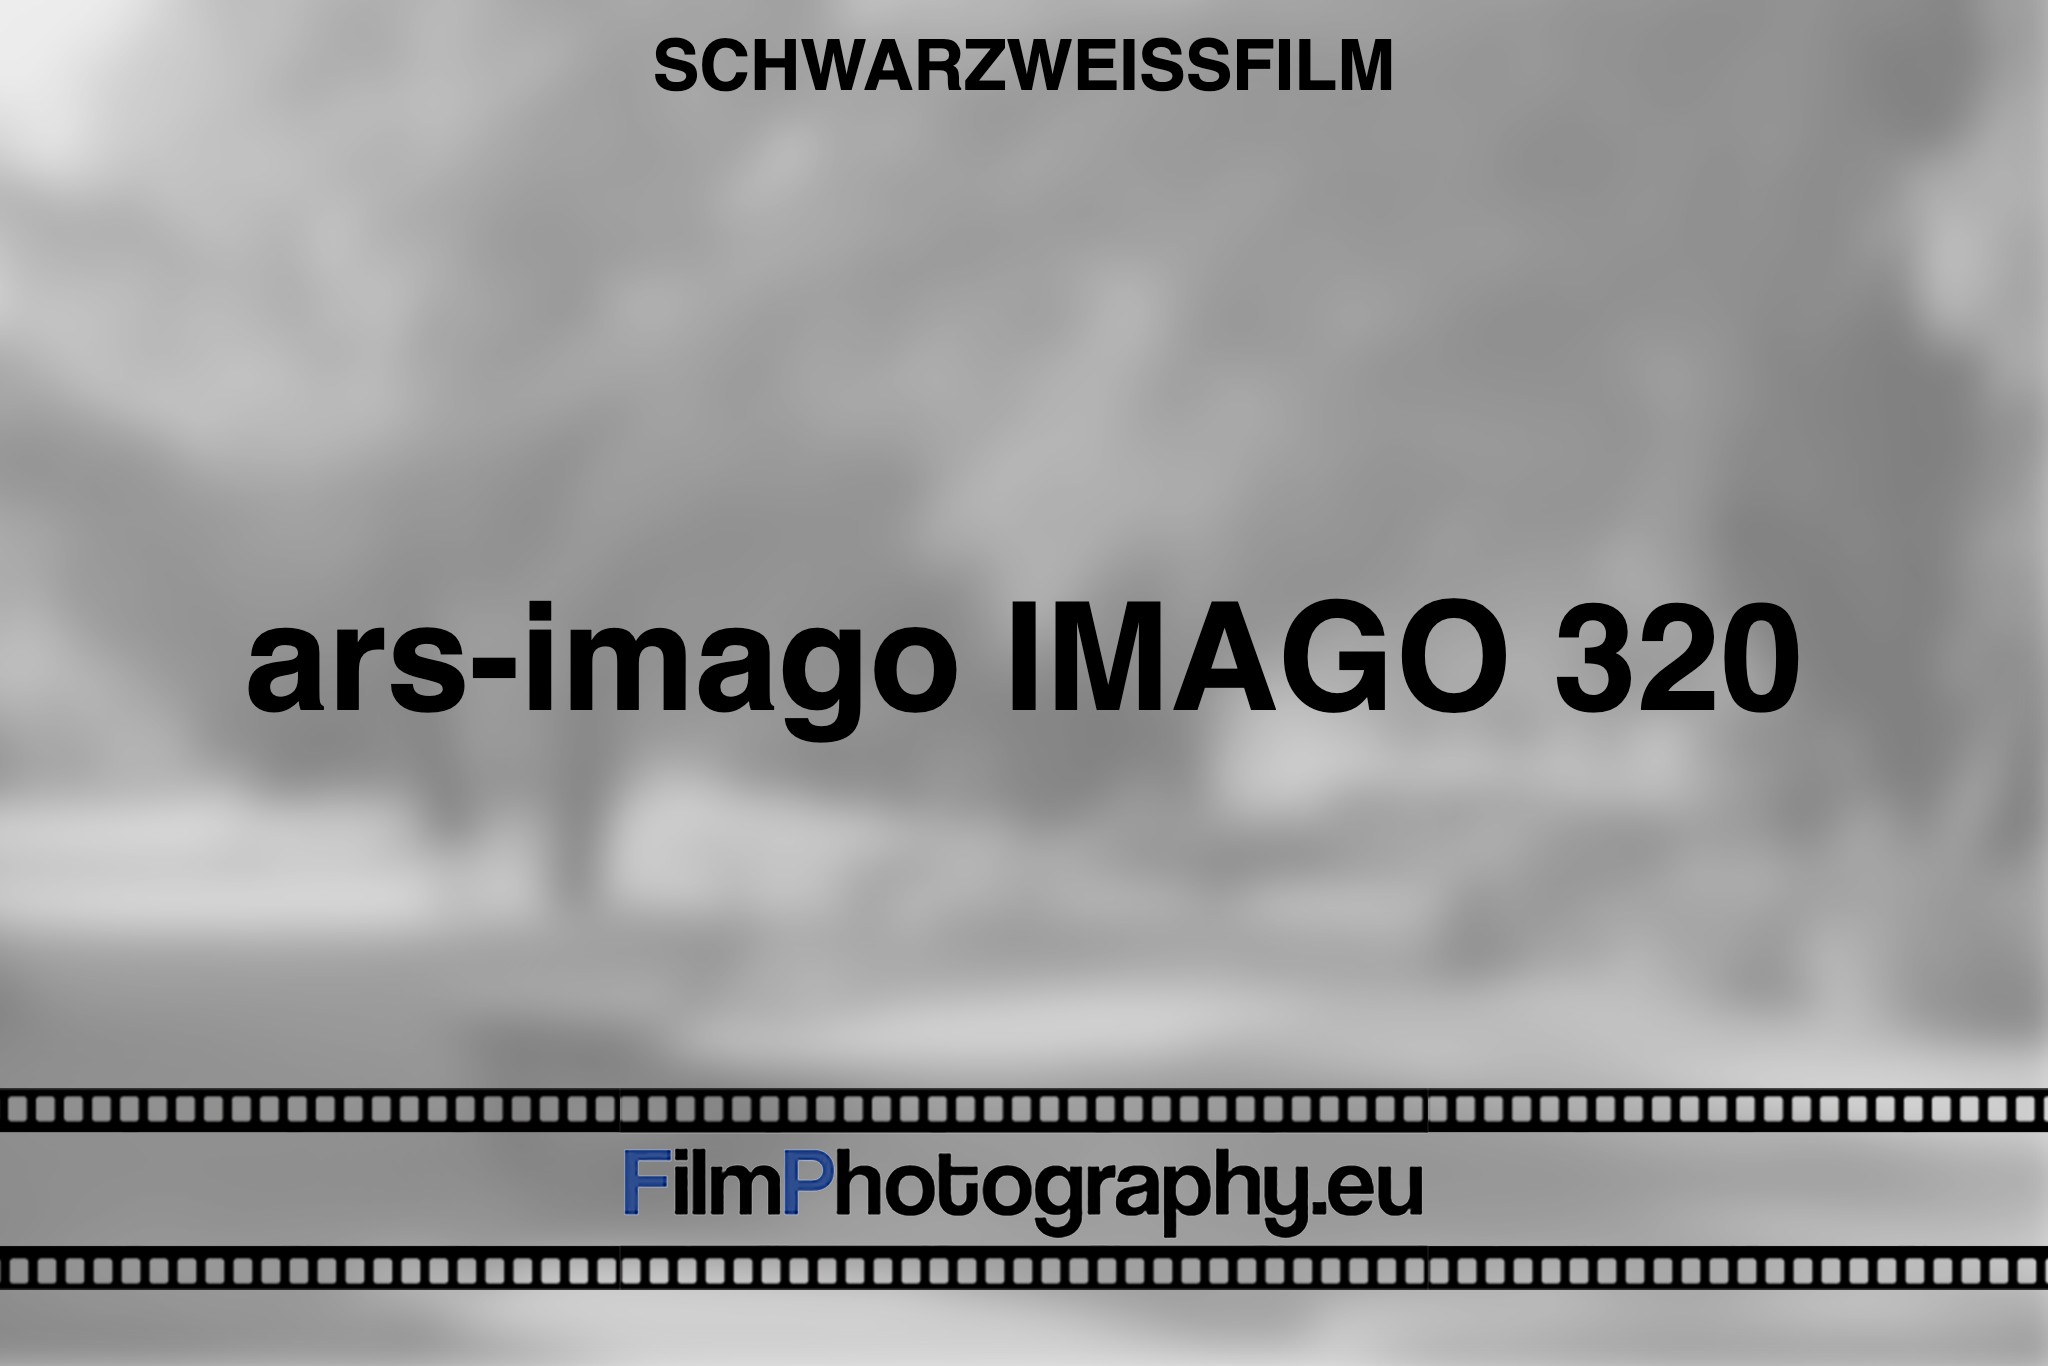 ars-imago-imago-320-schwarzweißfilm-bnv